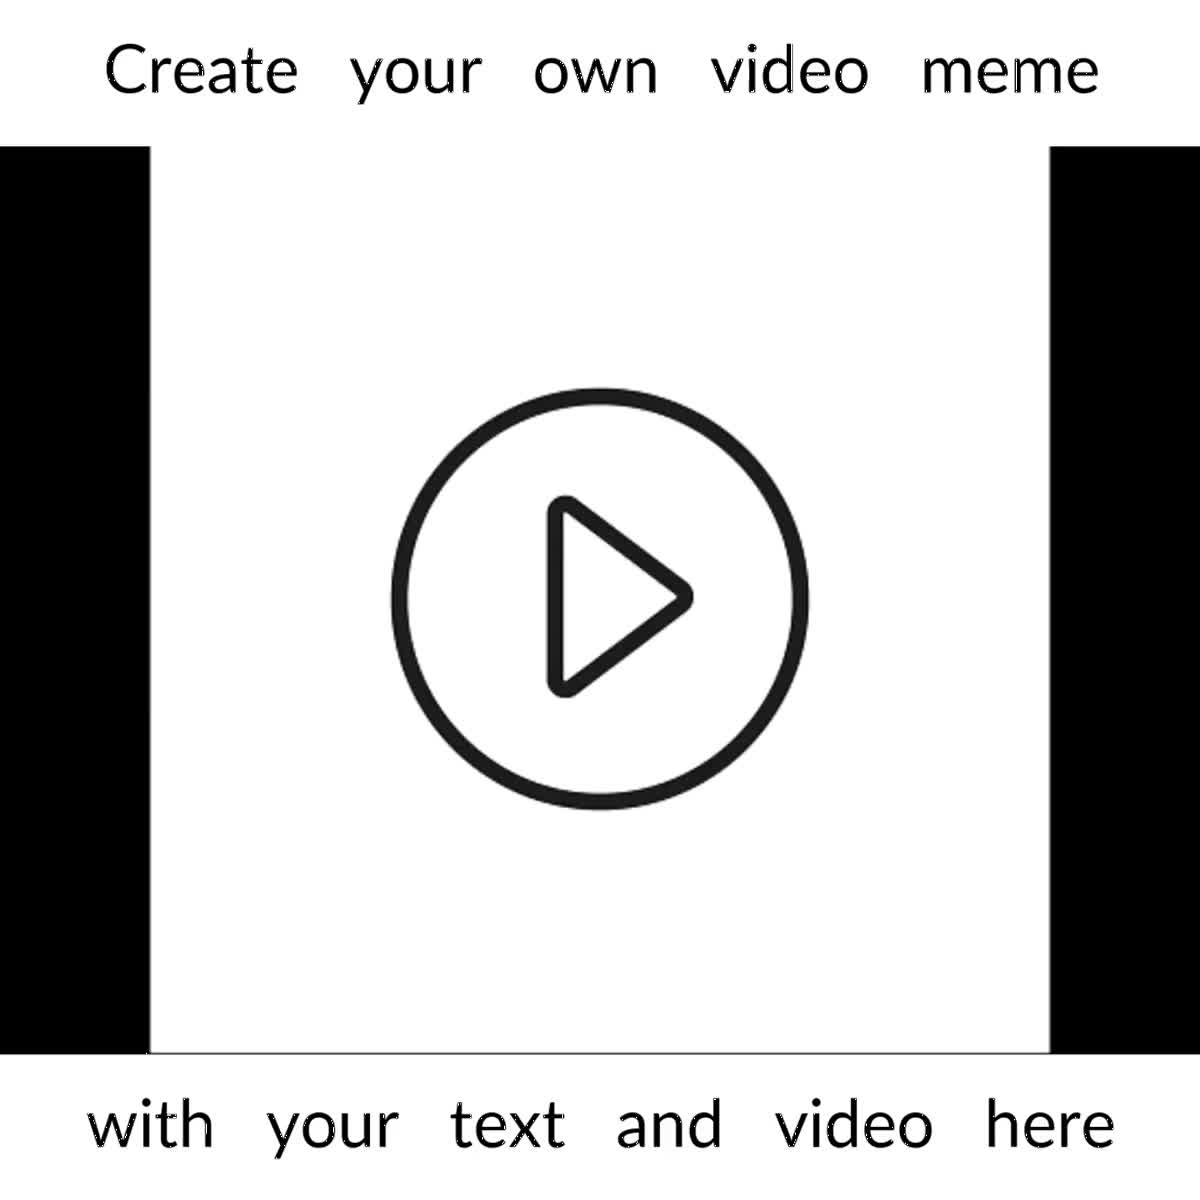 I will create your own custom video meme for $5 - SEOClerks